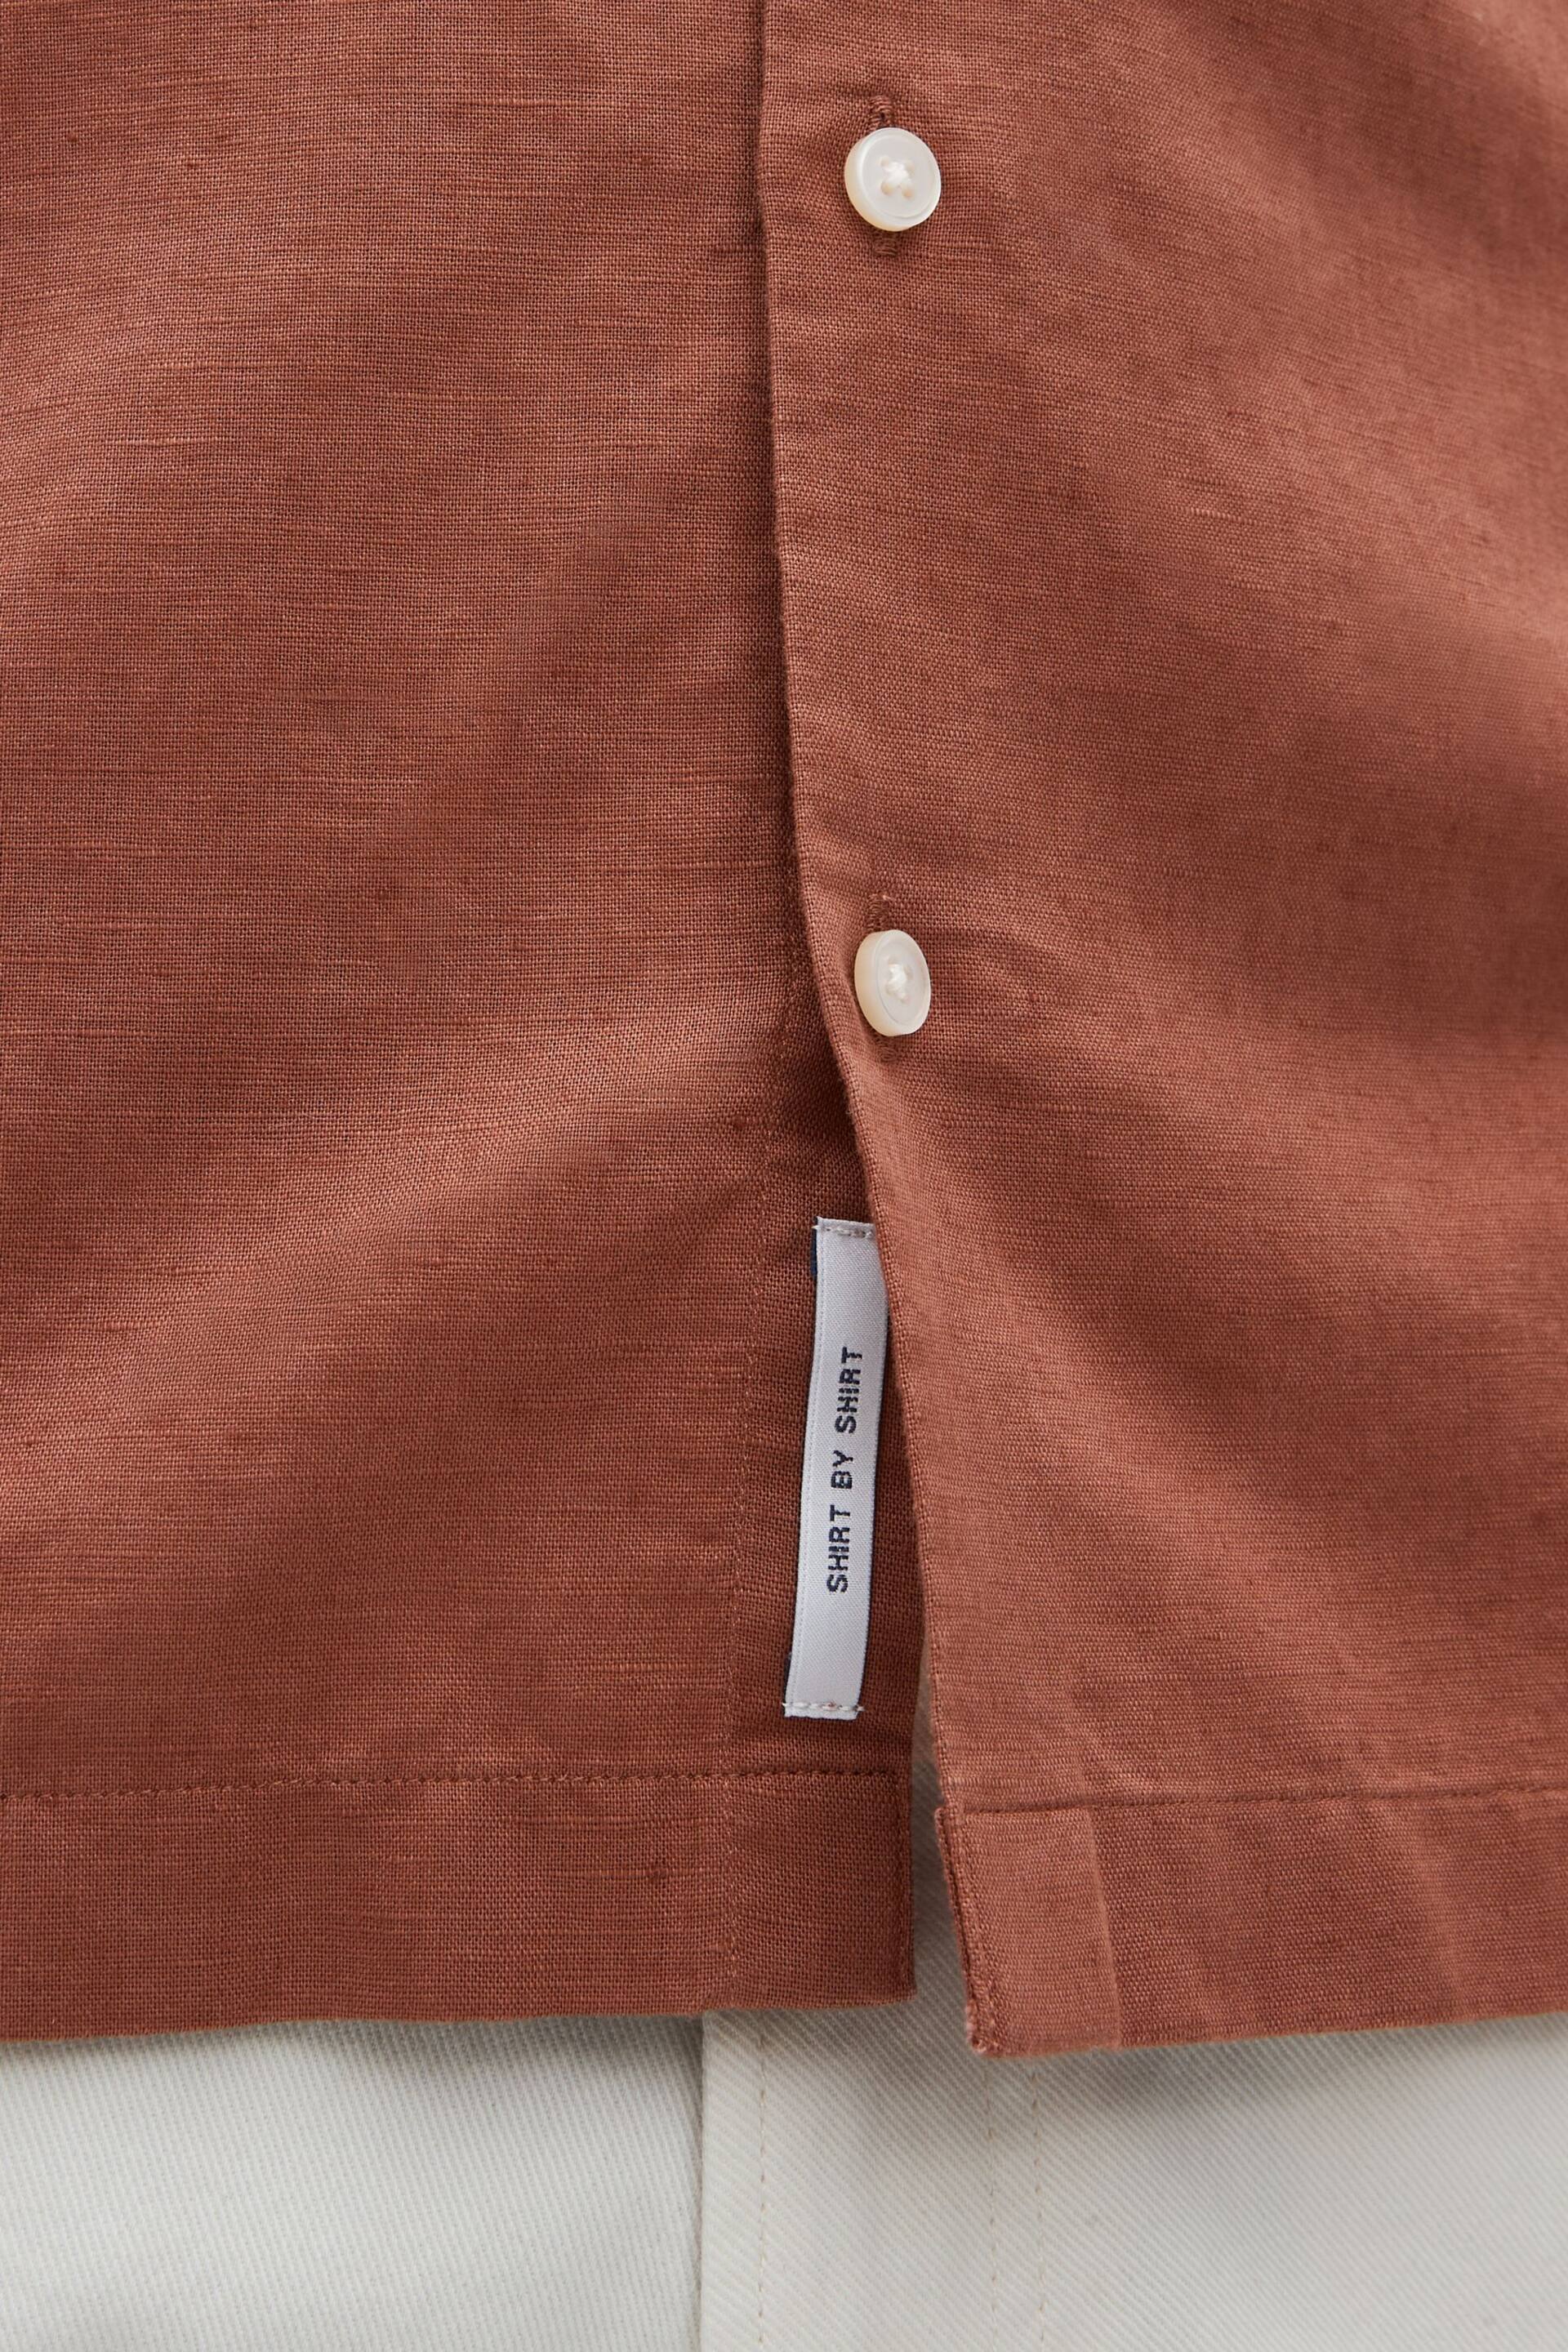 Brown Standard Collar Linen Blend Short Sleeve Shirt - Image 5 of 8